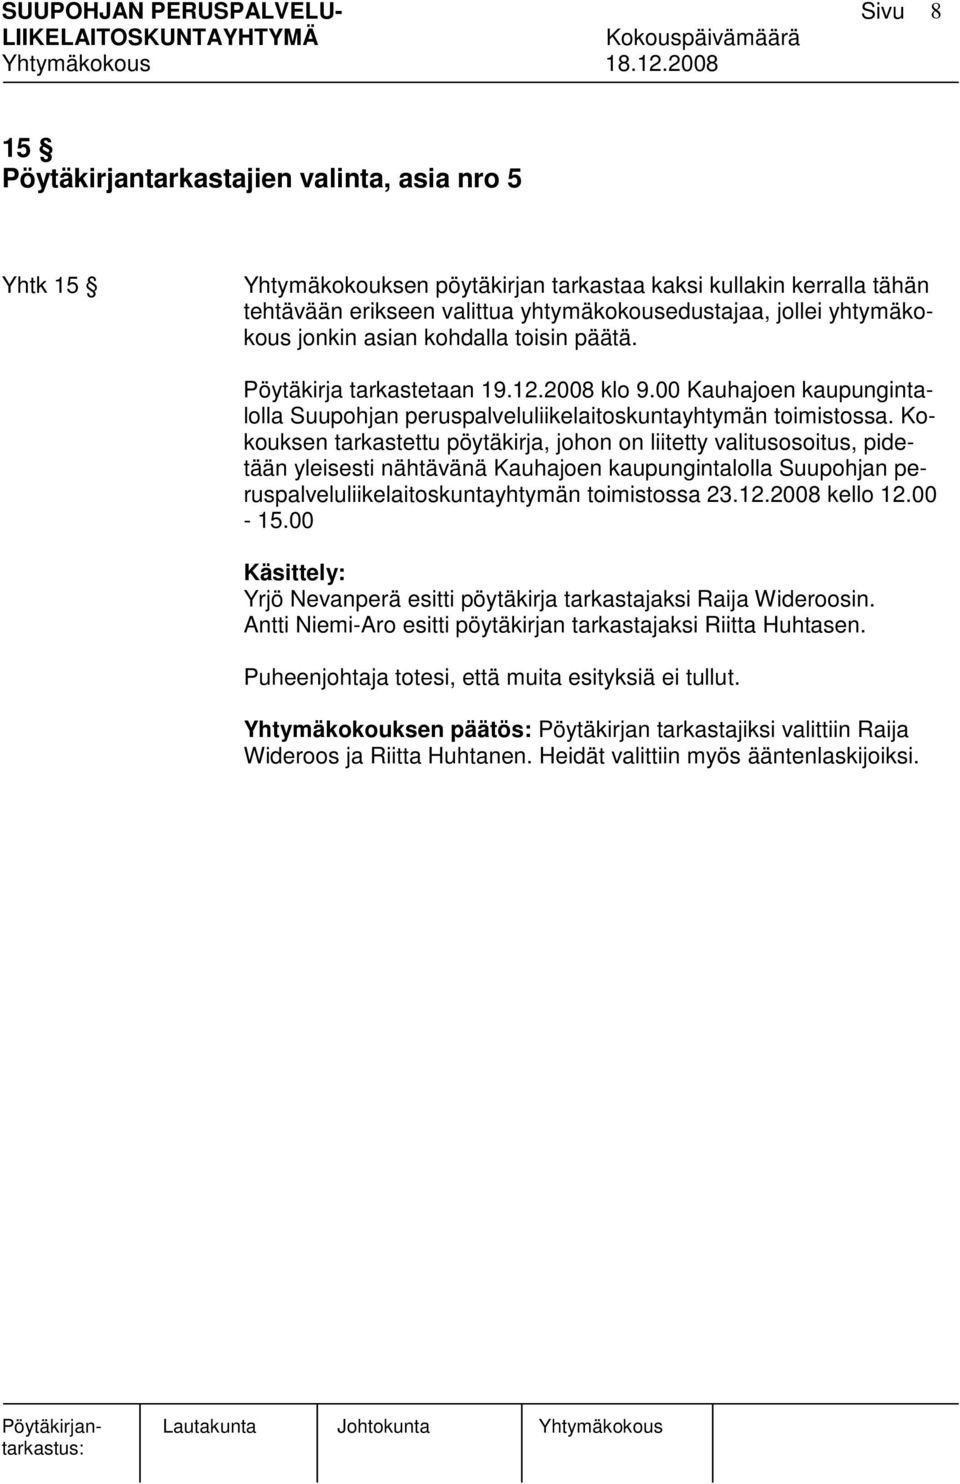 Kokouksen tarkastettu pöytäkirja, johon on liitetty valitusosoitus, pidetään yleisesti nähtävänä Kauhajoen kaupungintalolla Suupohjan peruspalveluliikelaitoskuntayhtymän toimistossa 23.12.